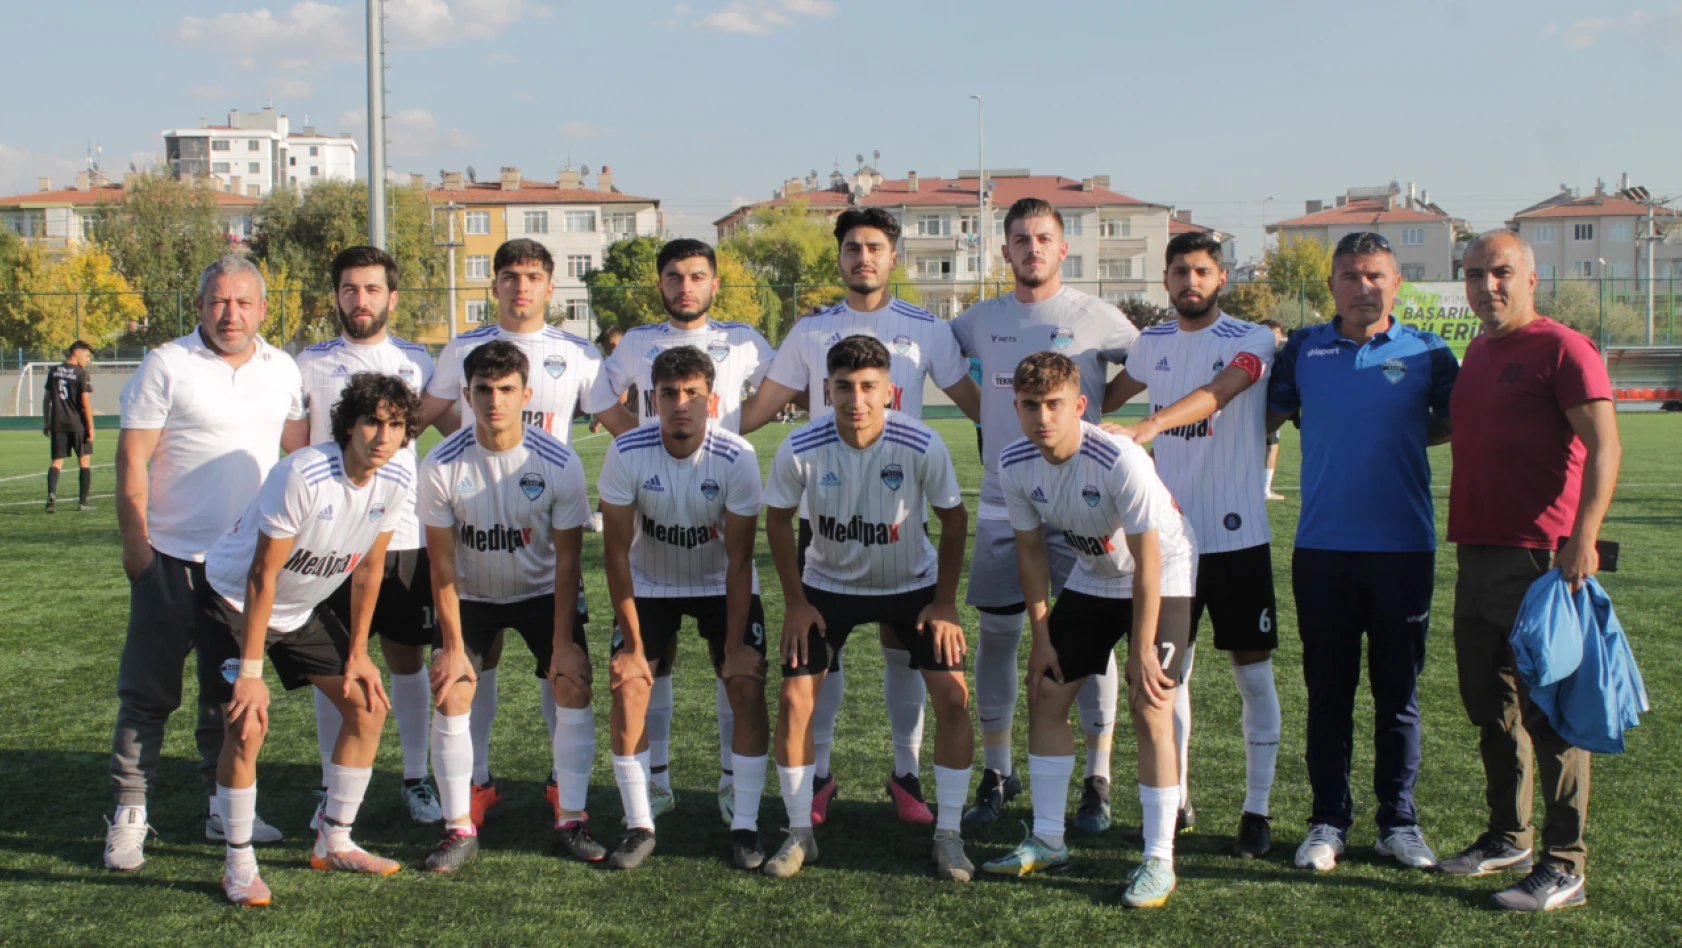 Atletikspor'dan net skor: 3-0 - Kayseri Amatör Futbol Haberleri